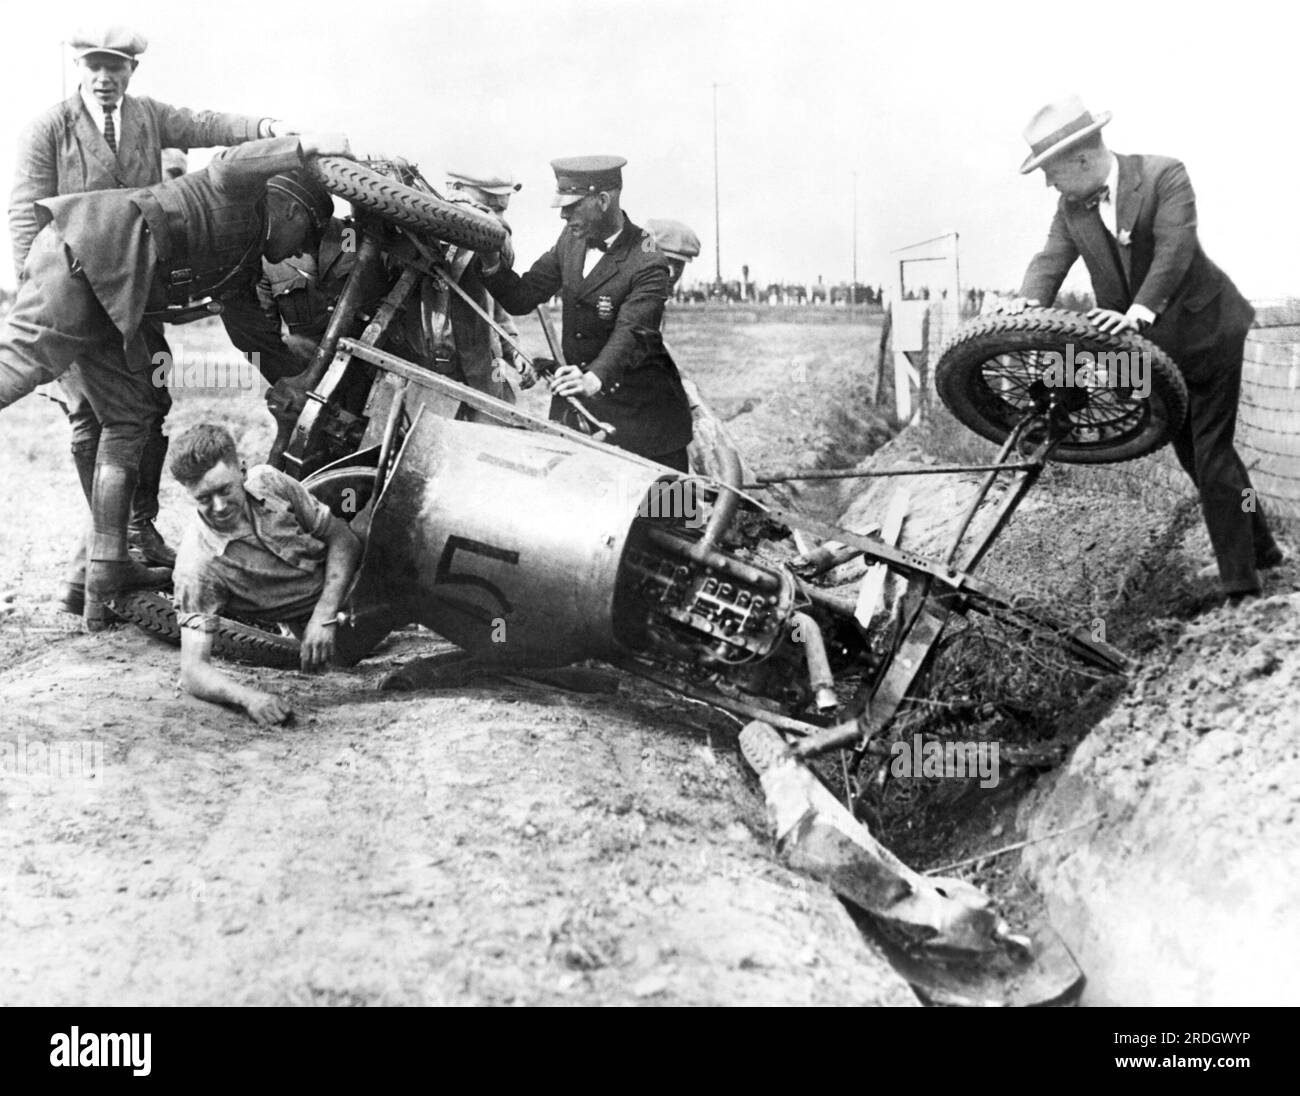 St Paul, Minnesota: 23 giugno 1926 Un pilota di auto da corsa viene aiutato dal suo veicolo dopo essersi schiantato. Le ruote anteriori si erano sparse durante la guida a 80 km/h, costringendolo nel fossato. Foto Stock